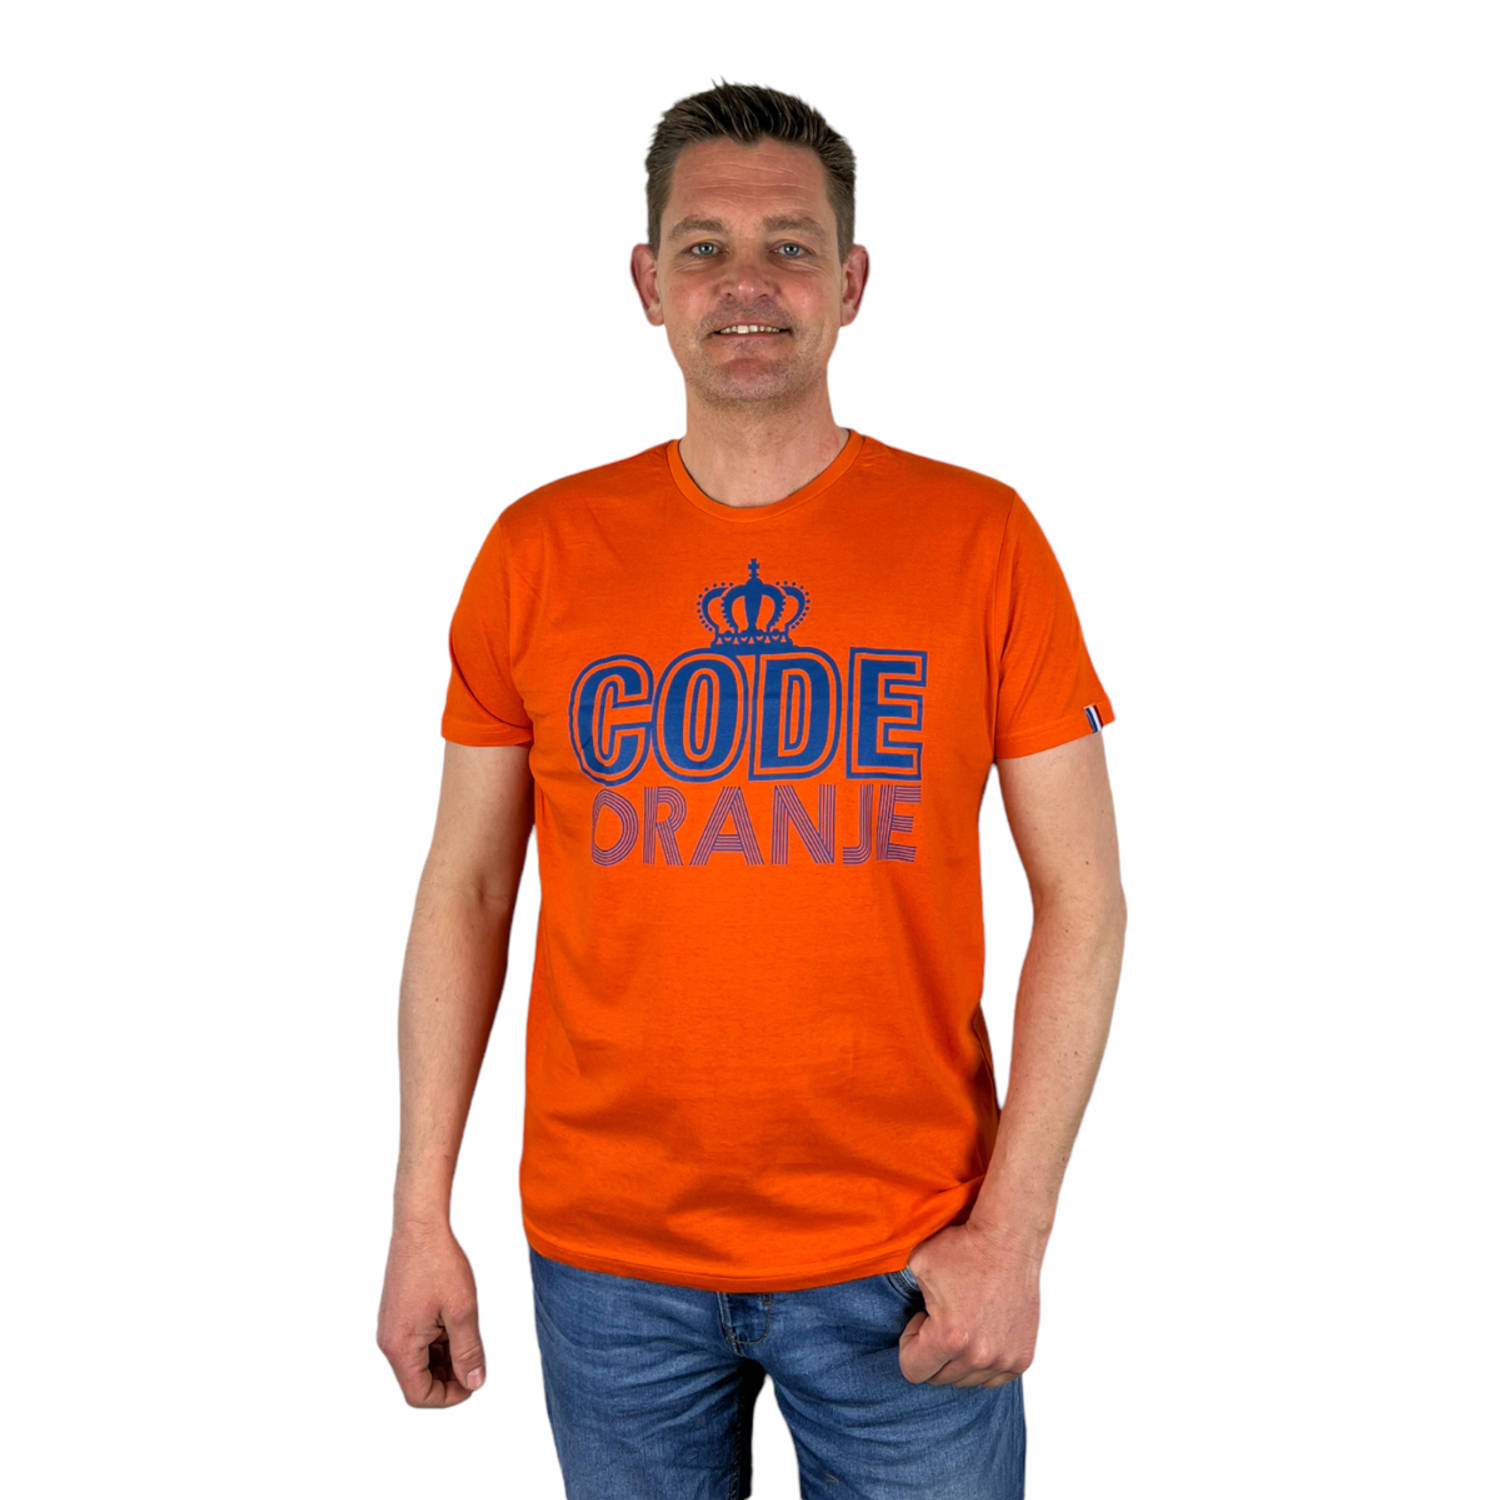 Oranje Heren T-Shirt - Code Oranje - Voor Koningsdag - Holland - Formule 1 - EK/WK Voetbal - Maat XXL